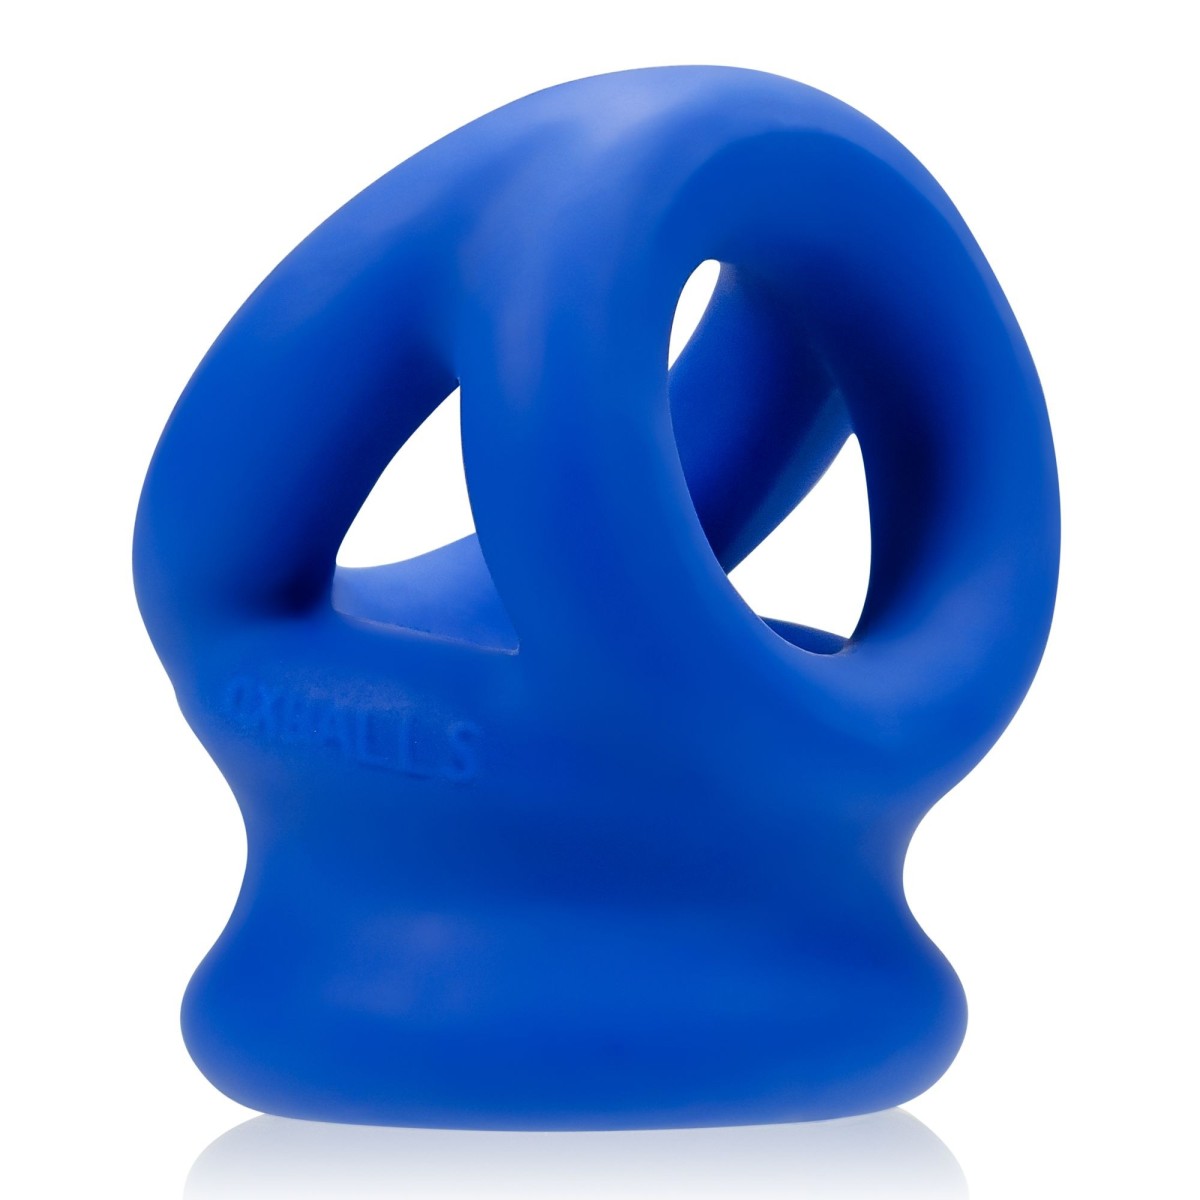 Erekční kroužek a natahovač varlat Oxballs Tri-Squeeze modrý, elastický erekční kroužek na penis a varlata